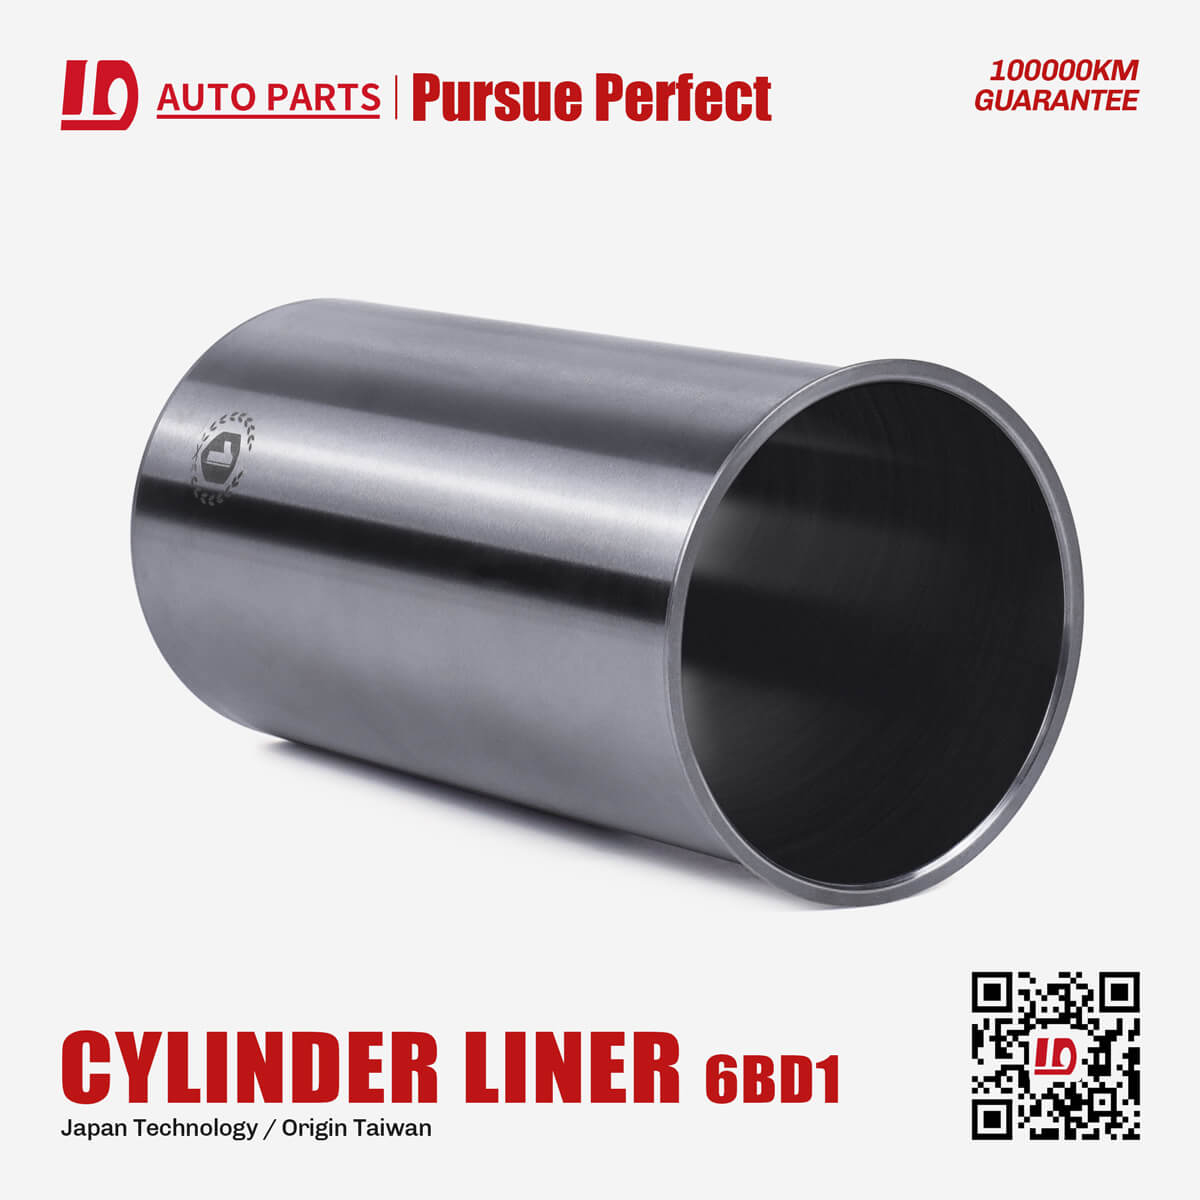 6BD1 diesel engine parts cylinder liner OEM:1-11141-196-0 cylinder liner